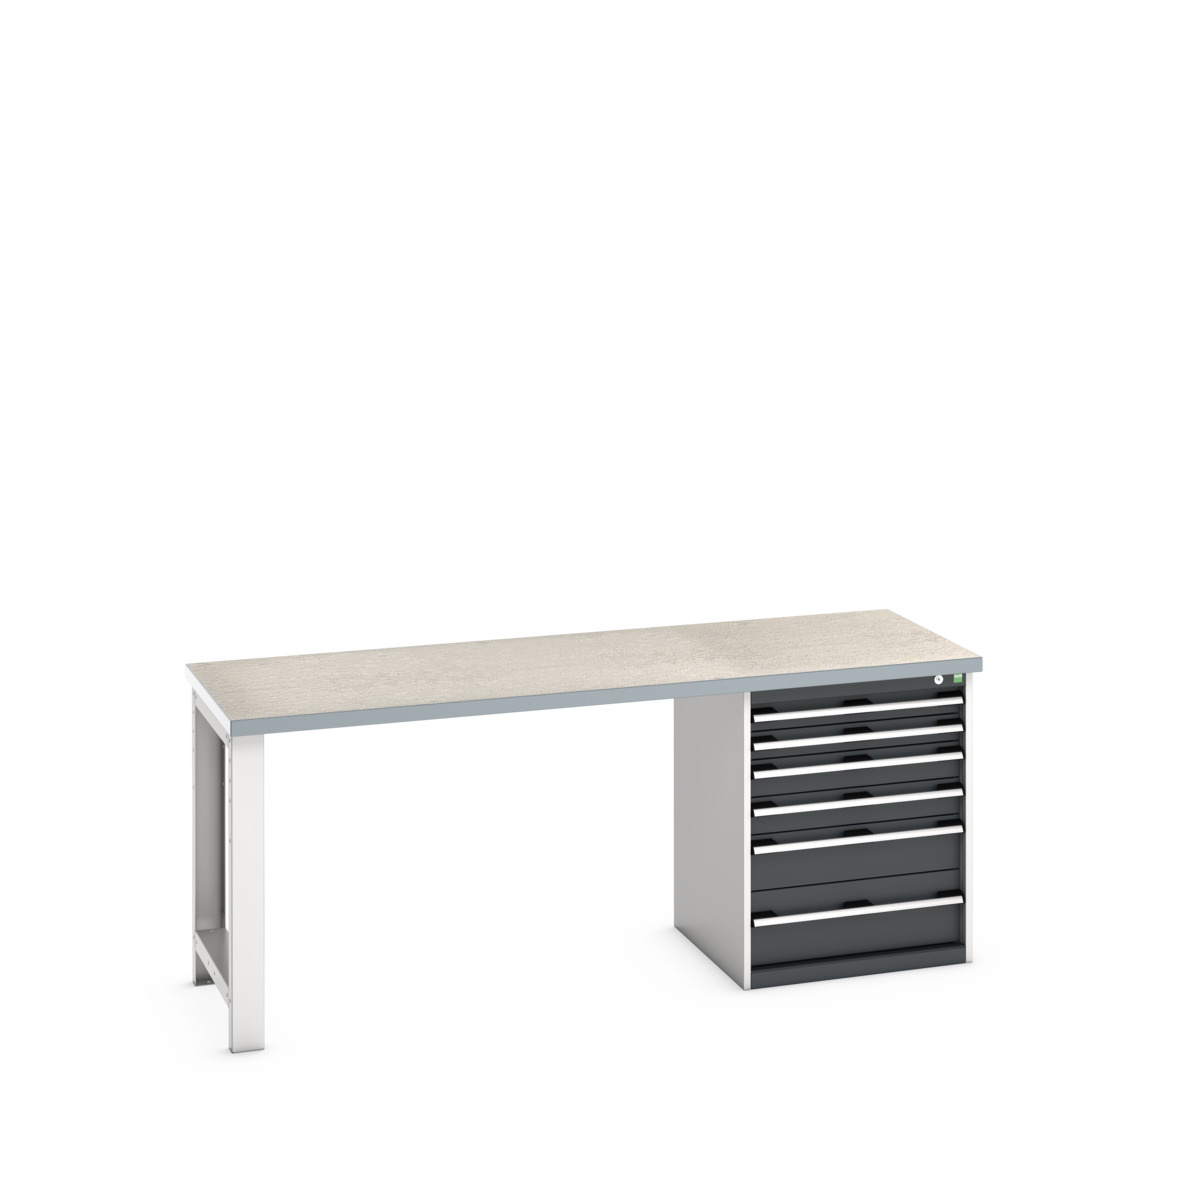 41003237.19V - cubio pedestal bench (lino)